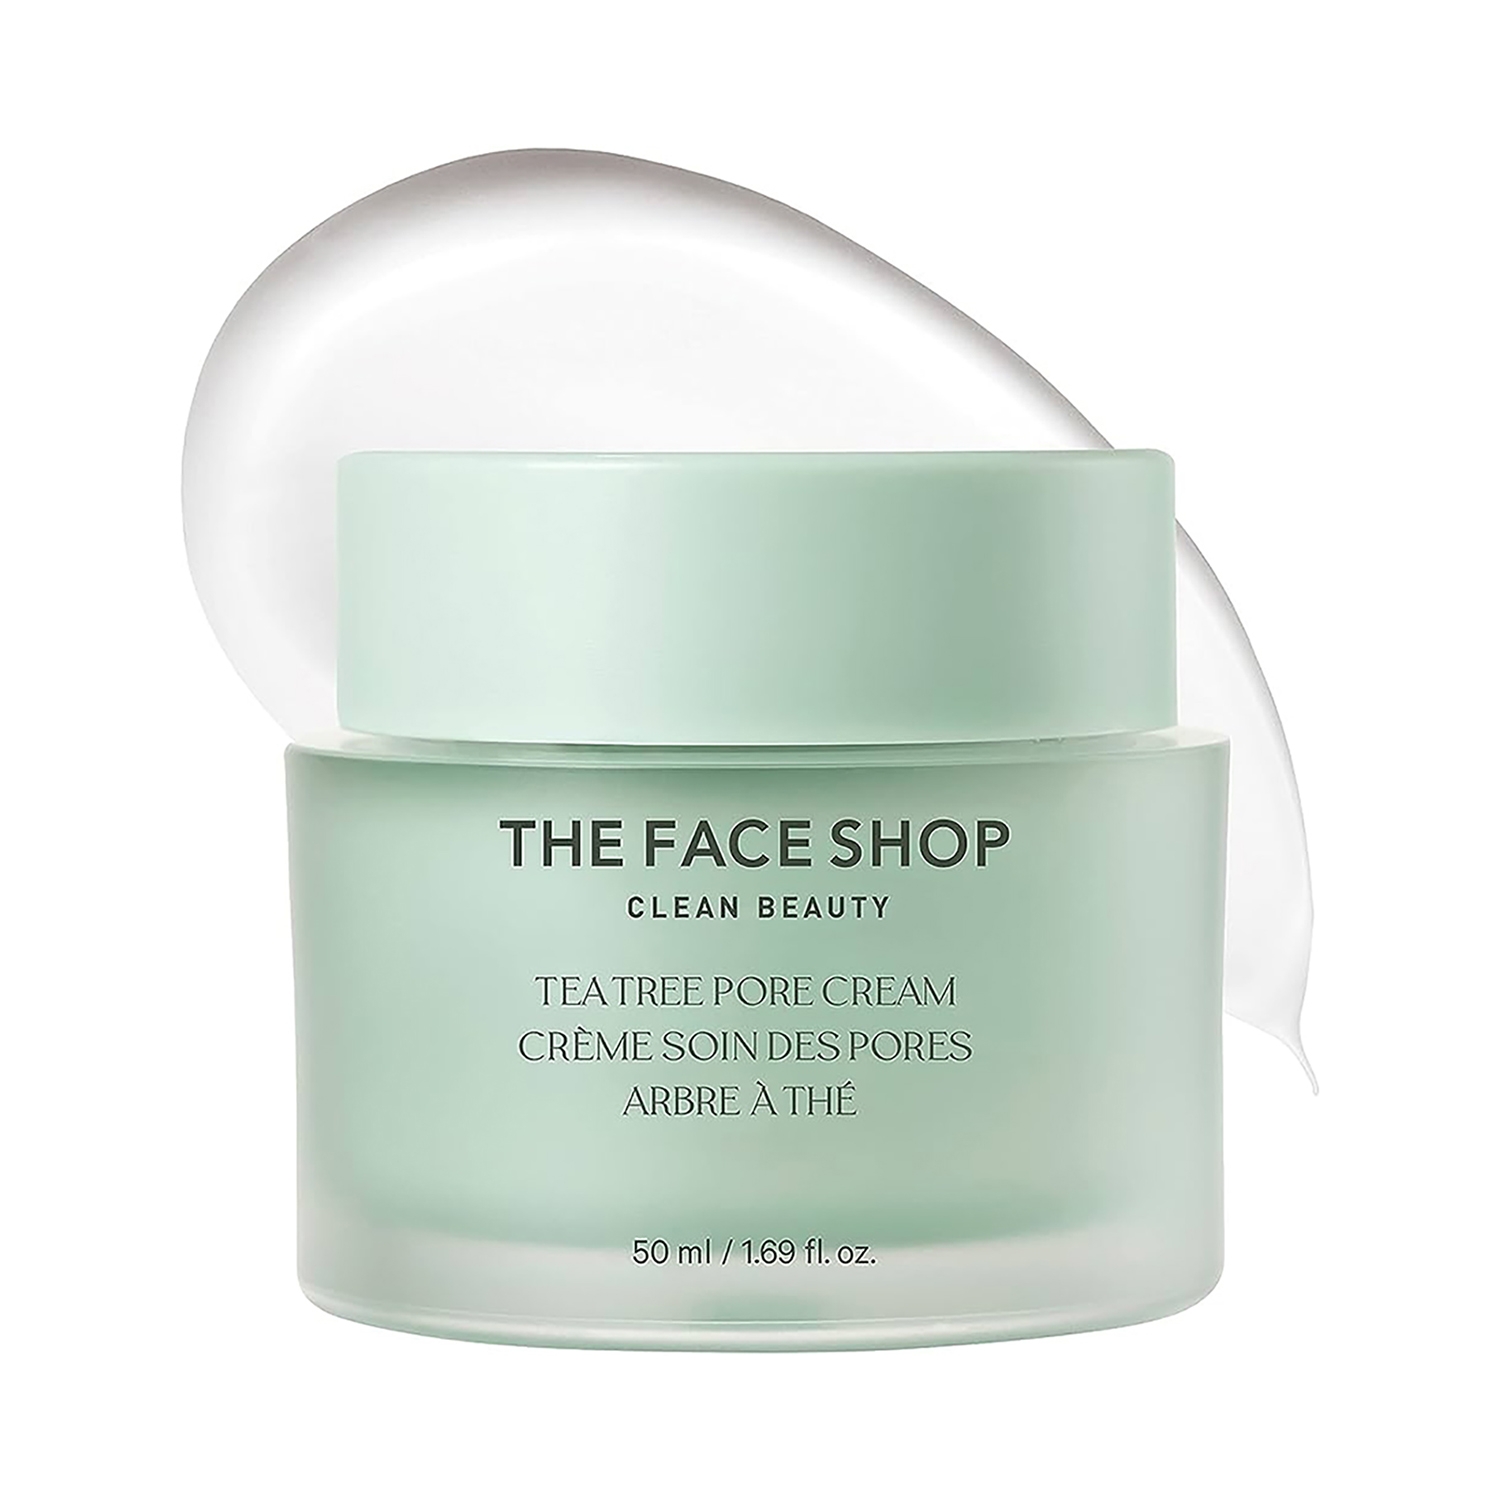 The Face Shop | The Face Shop Tea Tree Pore Cream (50ml)